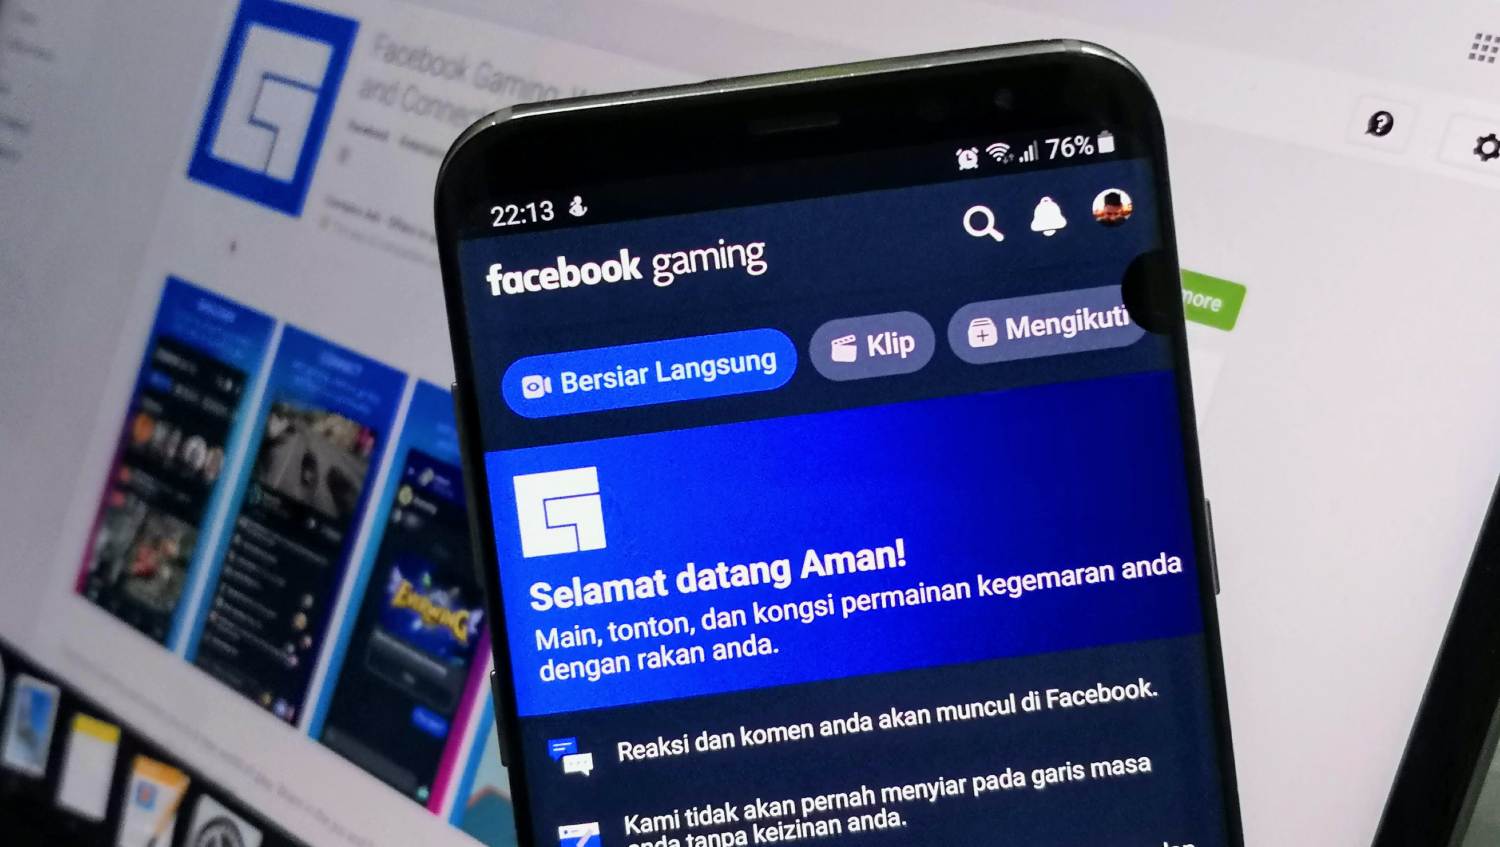 Facebook Gaming Kini Ditawarkan Untuk Android – Memudahkan Penstriman Permua Ke Facebook